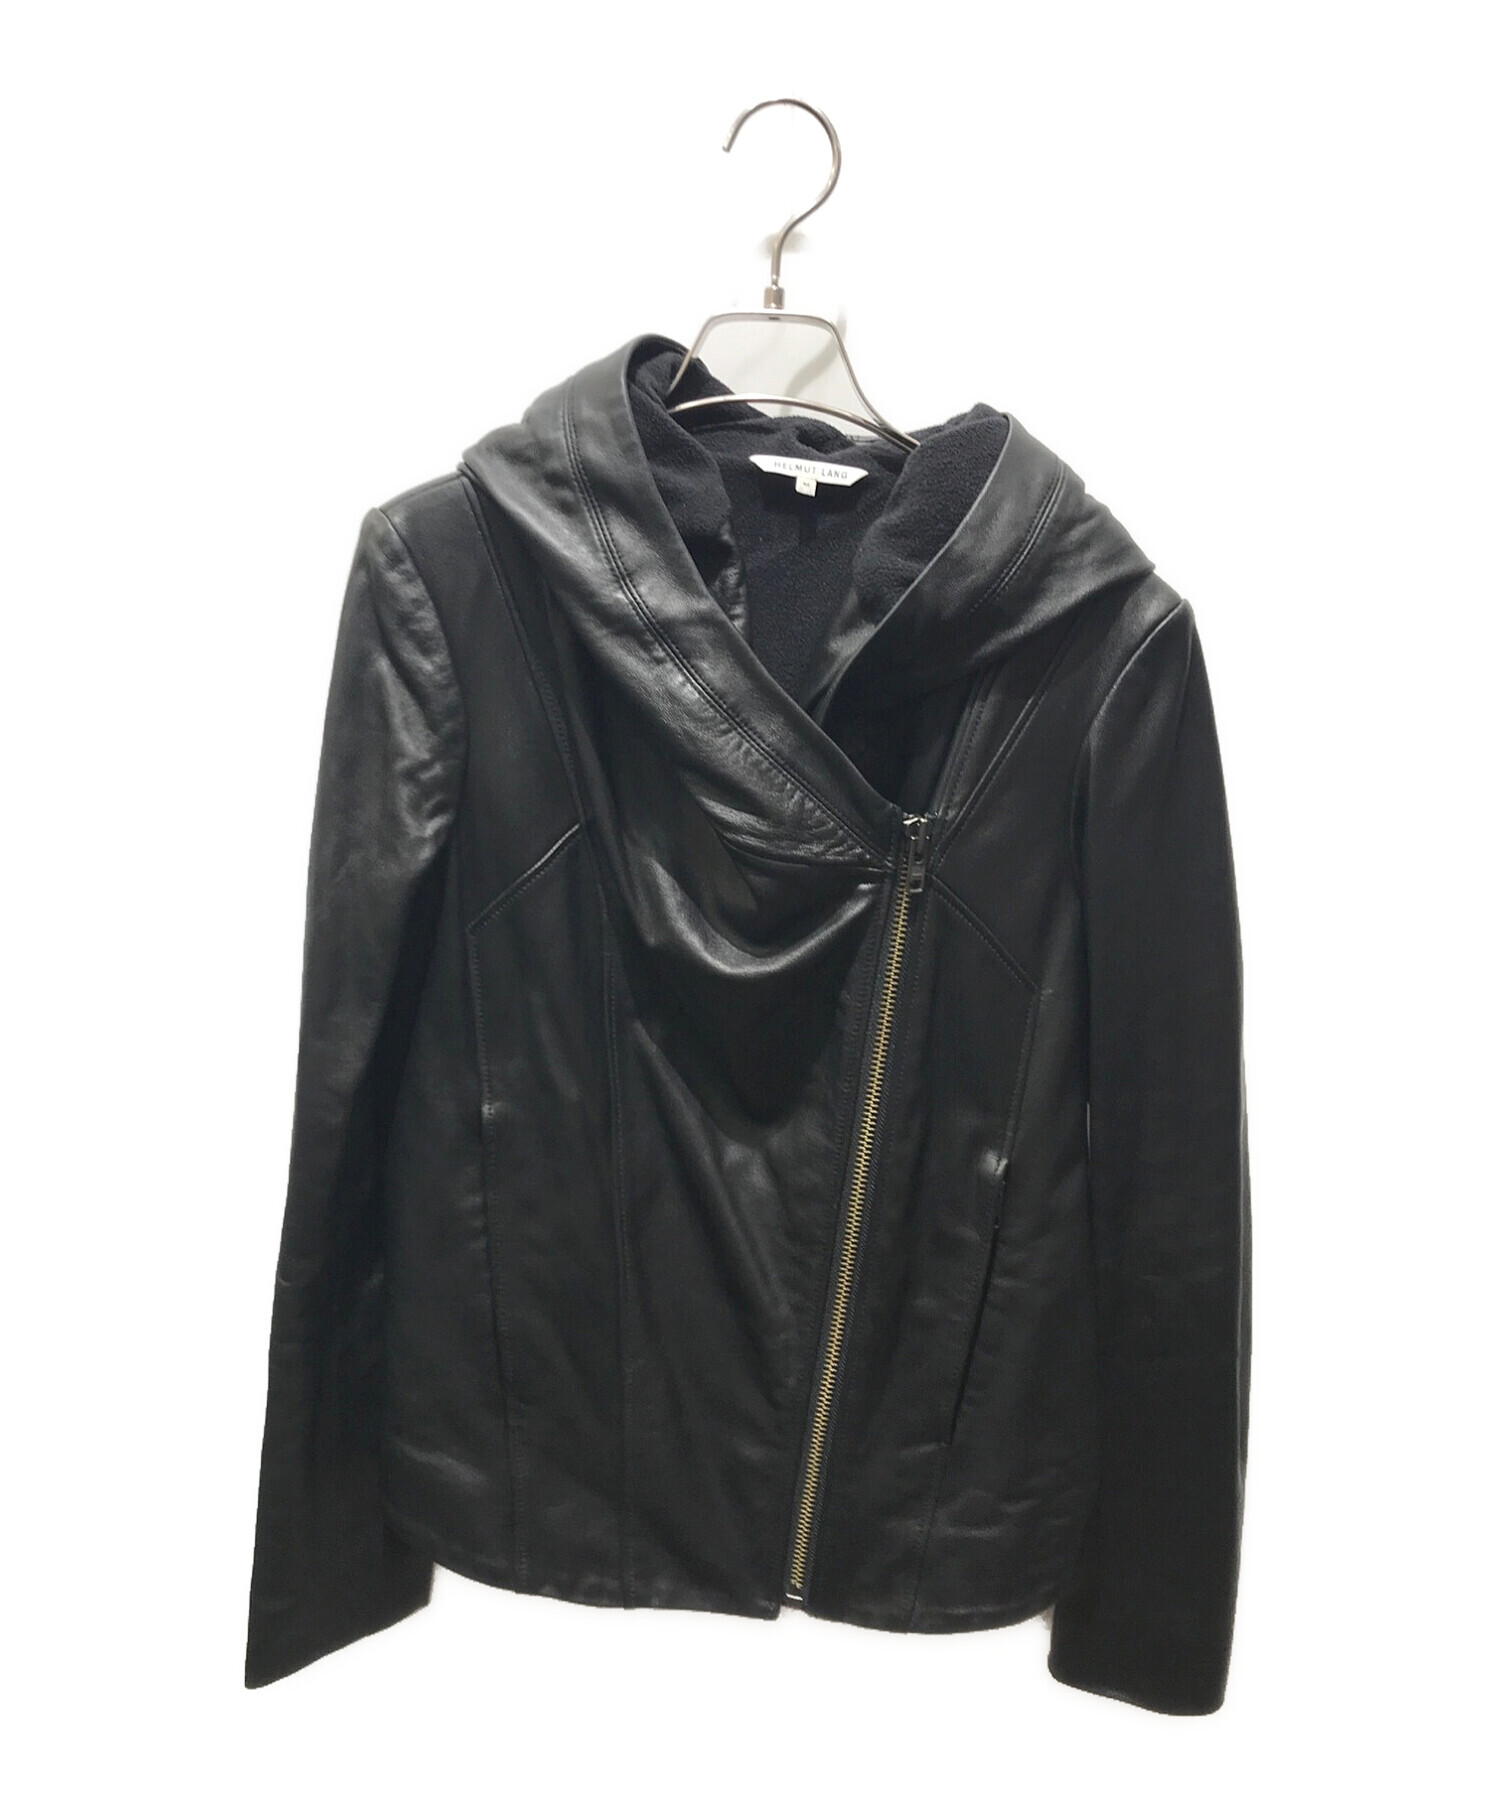 HELMUT LANG (ヘルムートラング) レザーフーデットジャケット ブラック サイズ:M